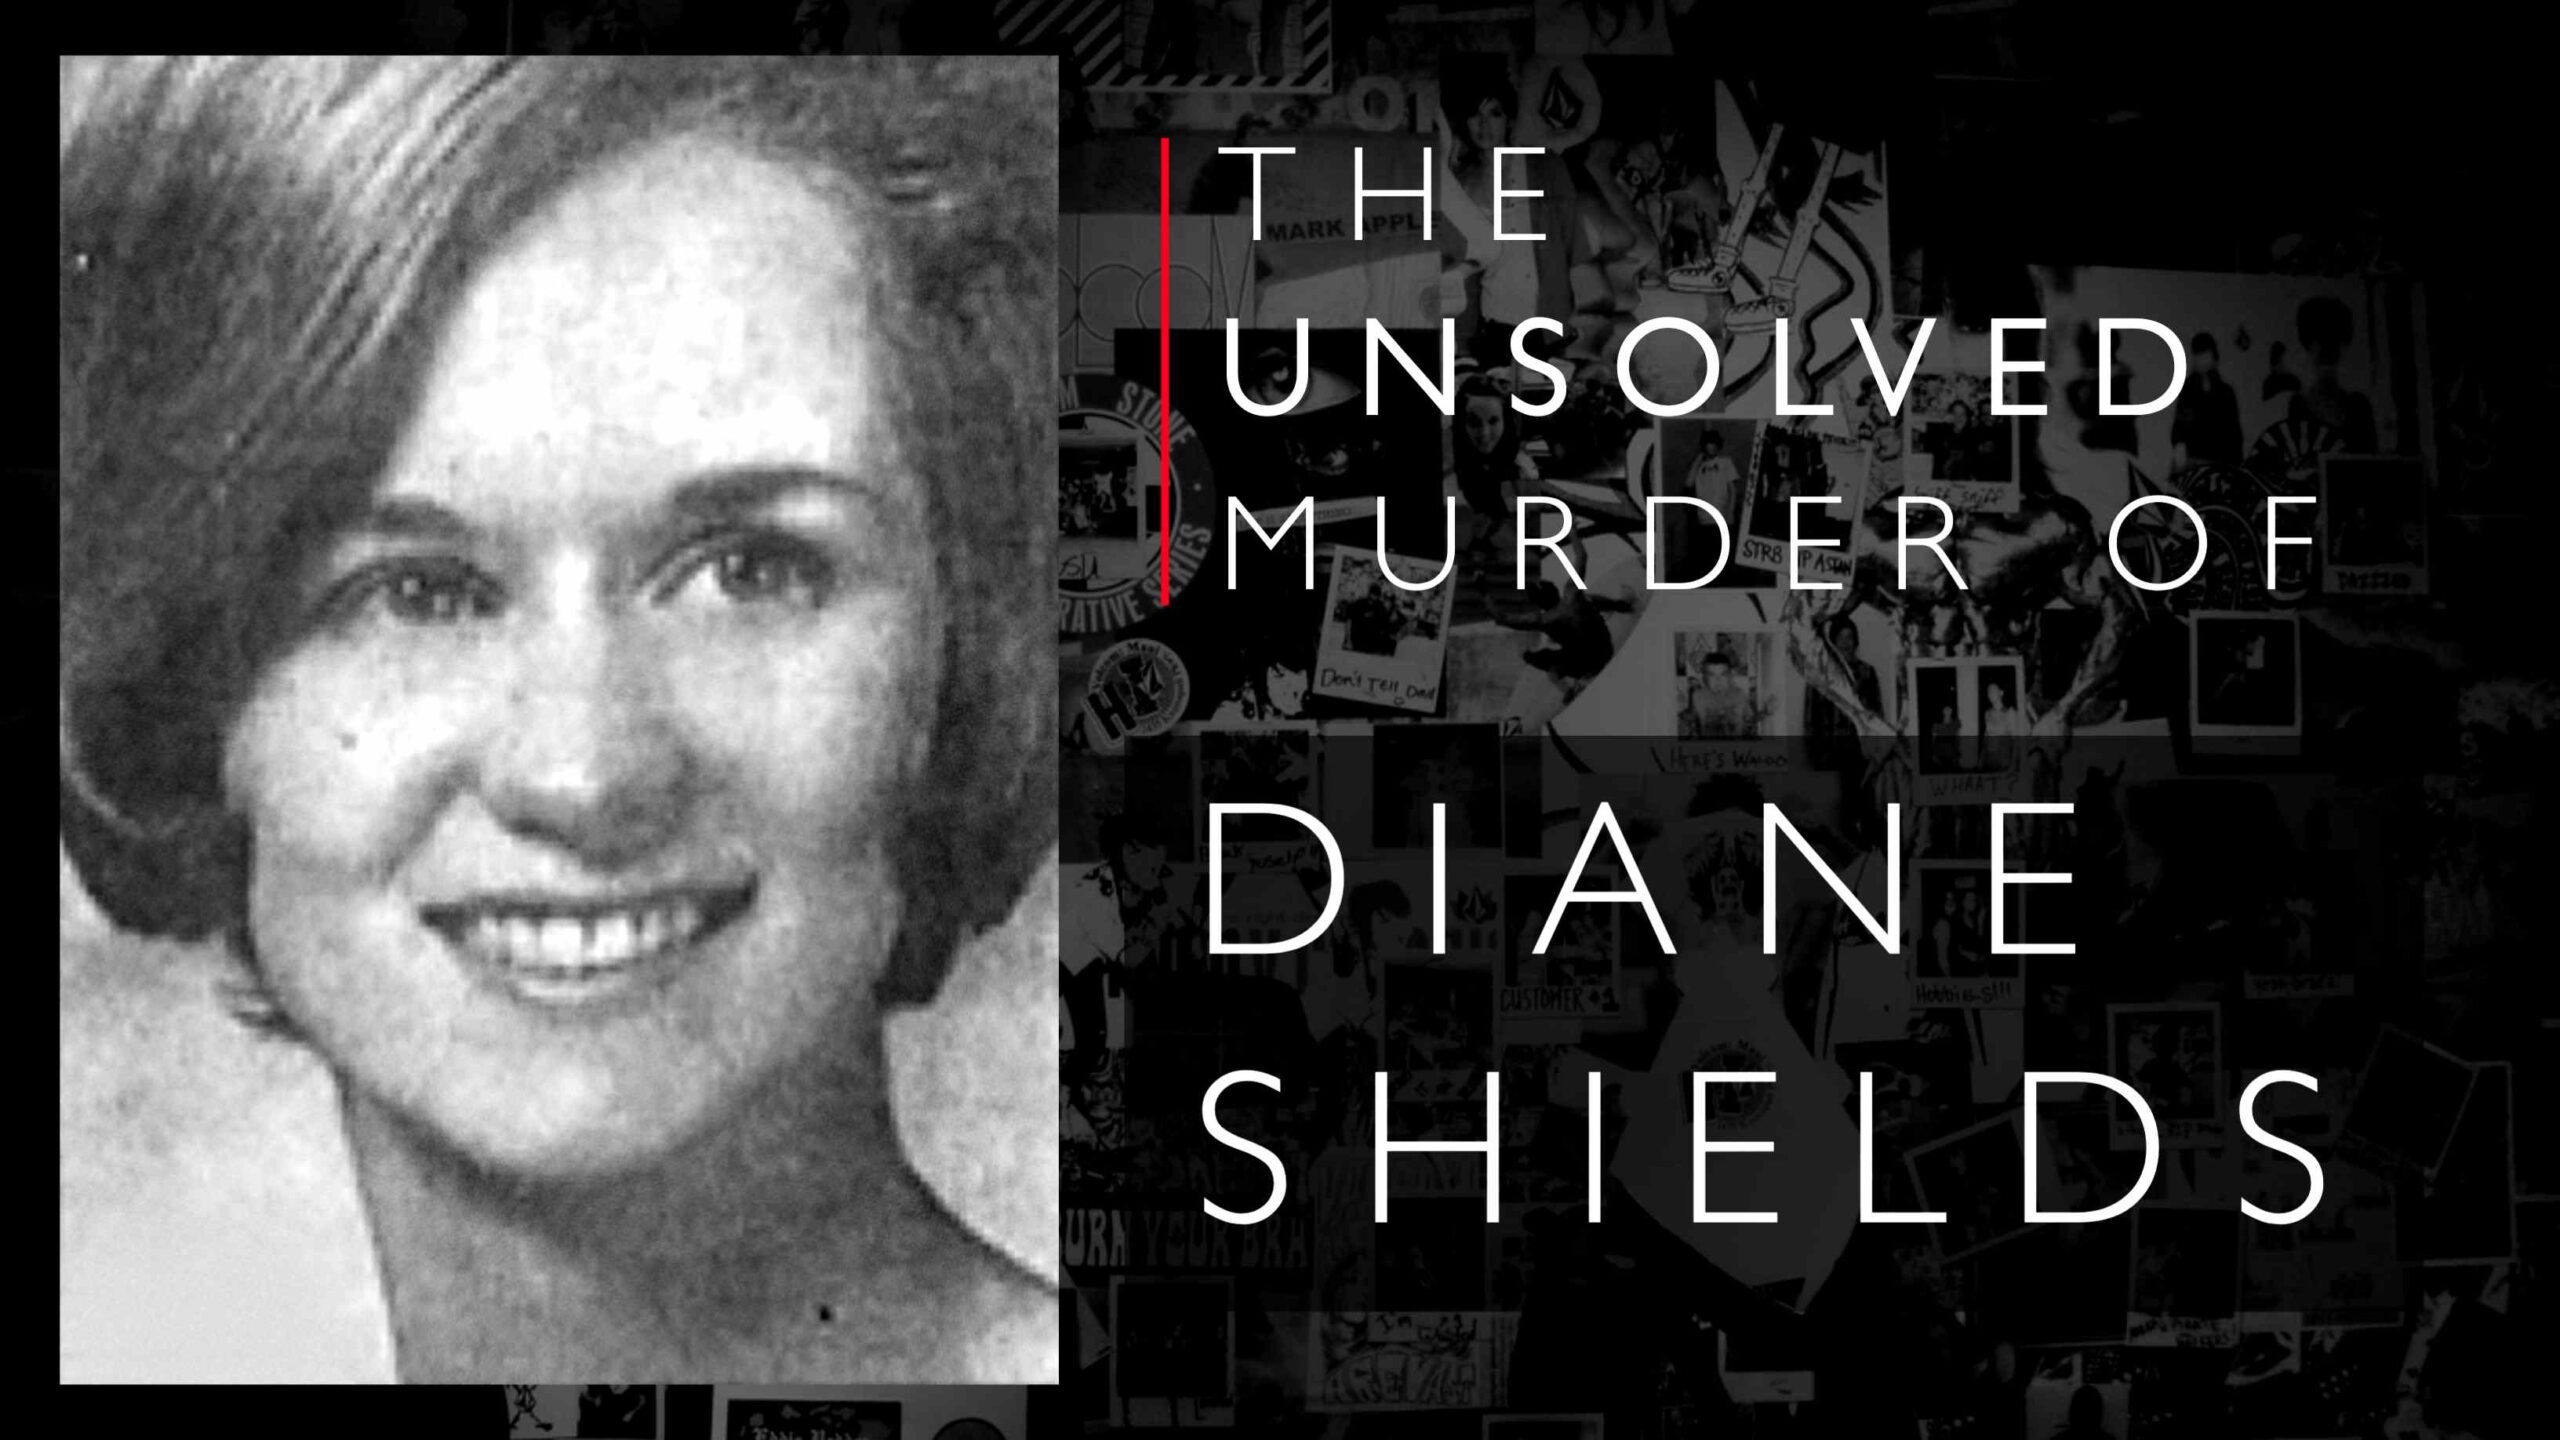 Diane Shields bizonyos szempontból Mary Shotwell Little nyomdokaiba lépett, majd meggyilkoltnak találták.